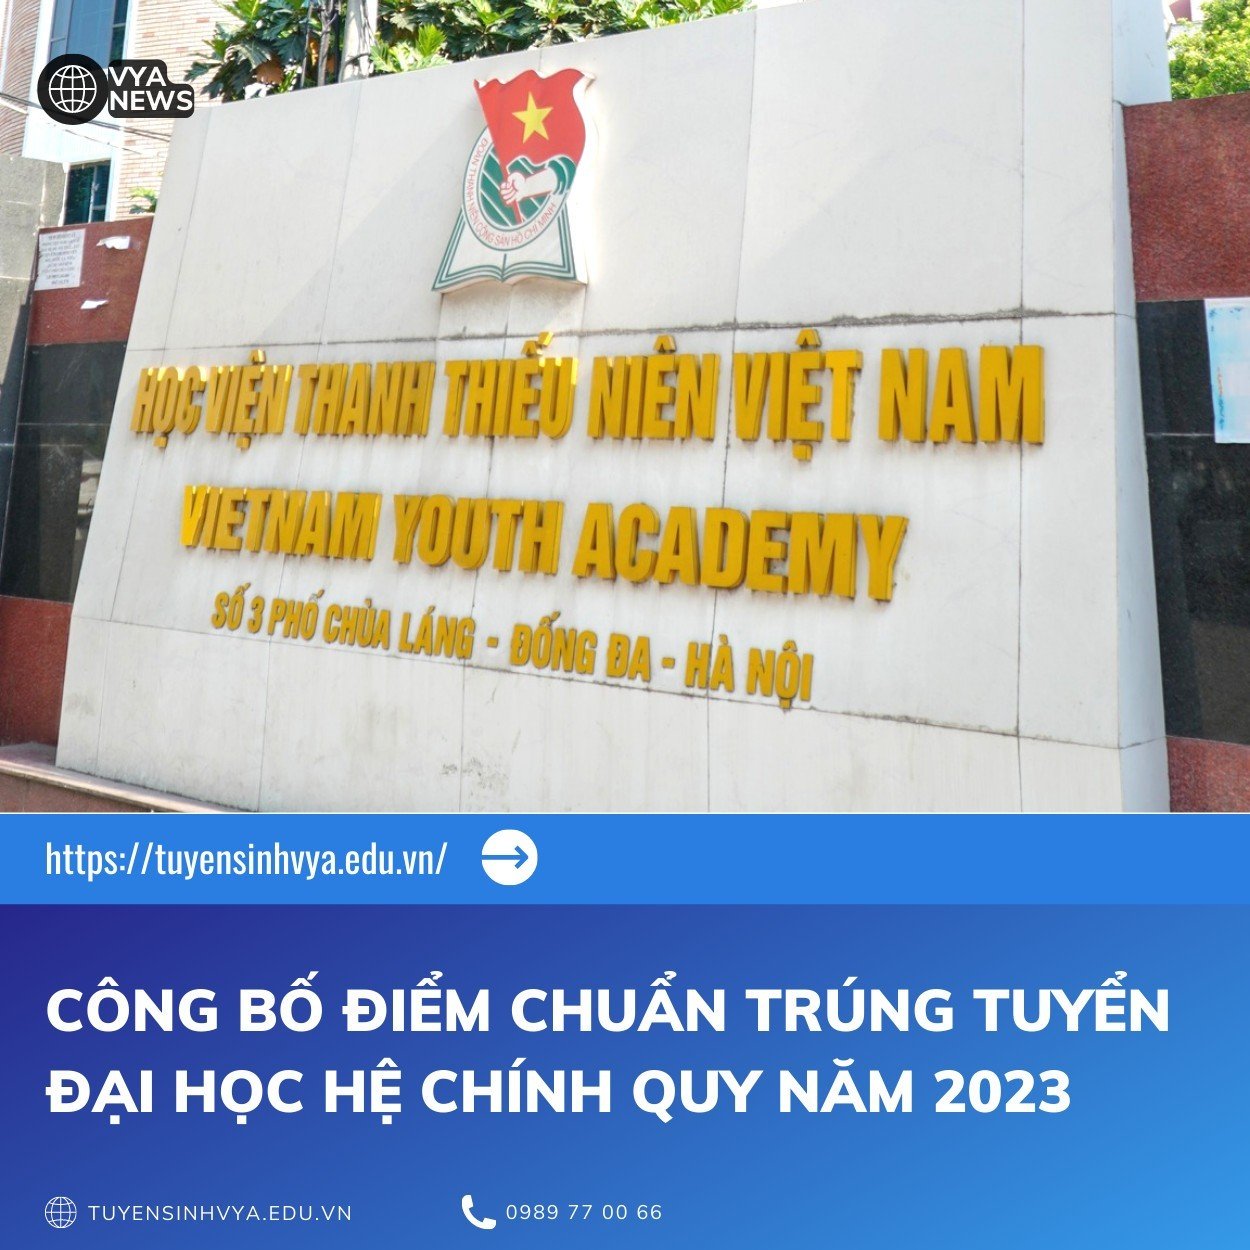 Học viện Thanh thiếu niên Việt Nam công bố điểm trúng tuyển các ngành đào tạo hệ đại học chính quy năm 2023